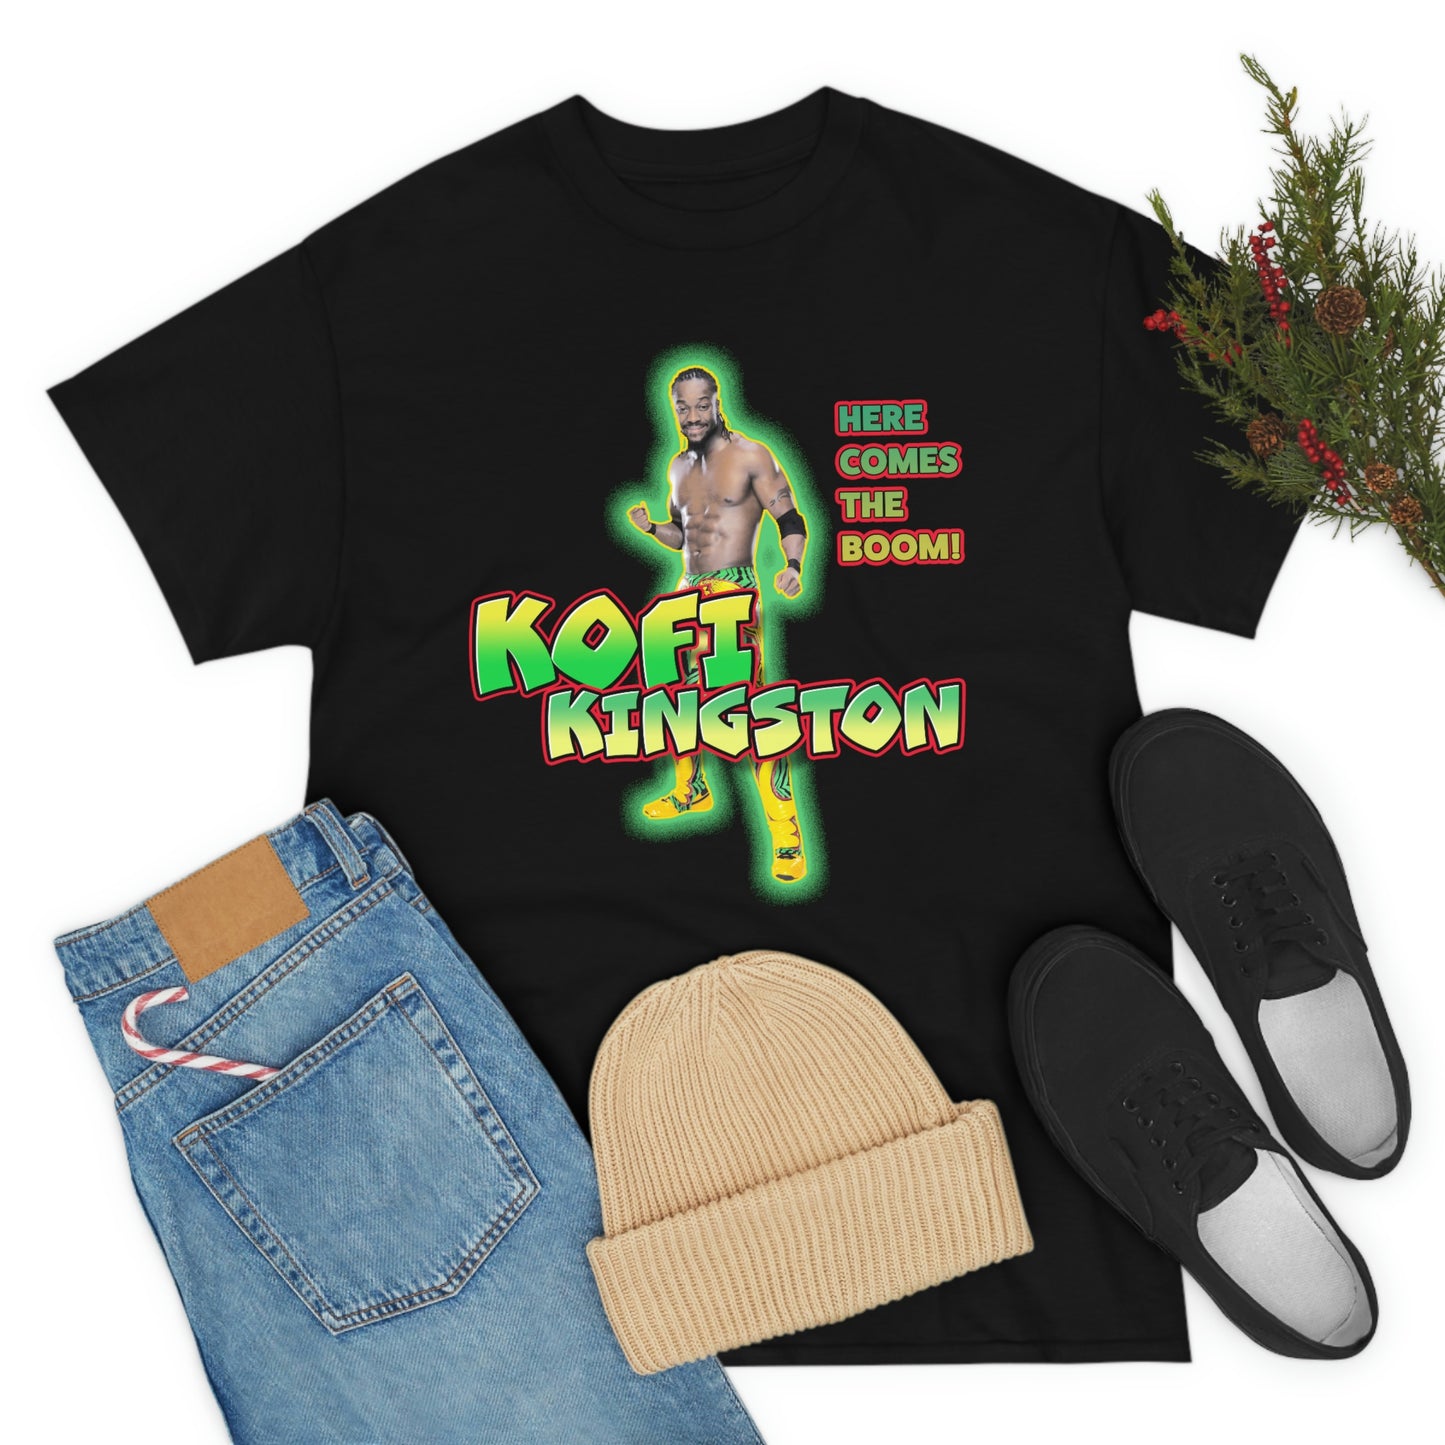 Kofi Kingston WWE Wrestling Star Unisex Heavy Cotton Tee